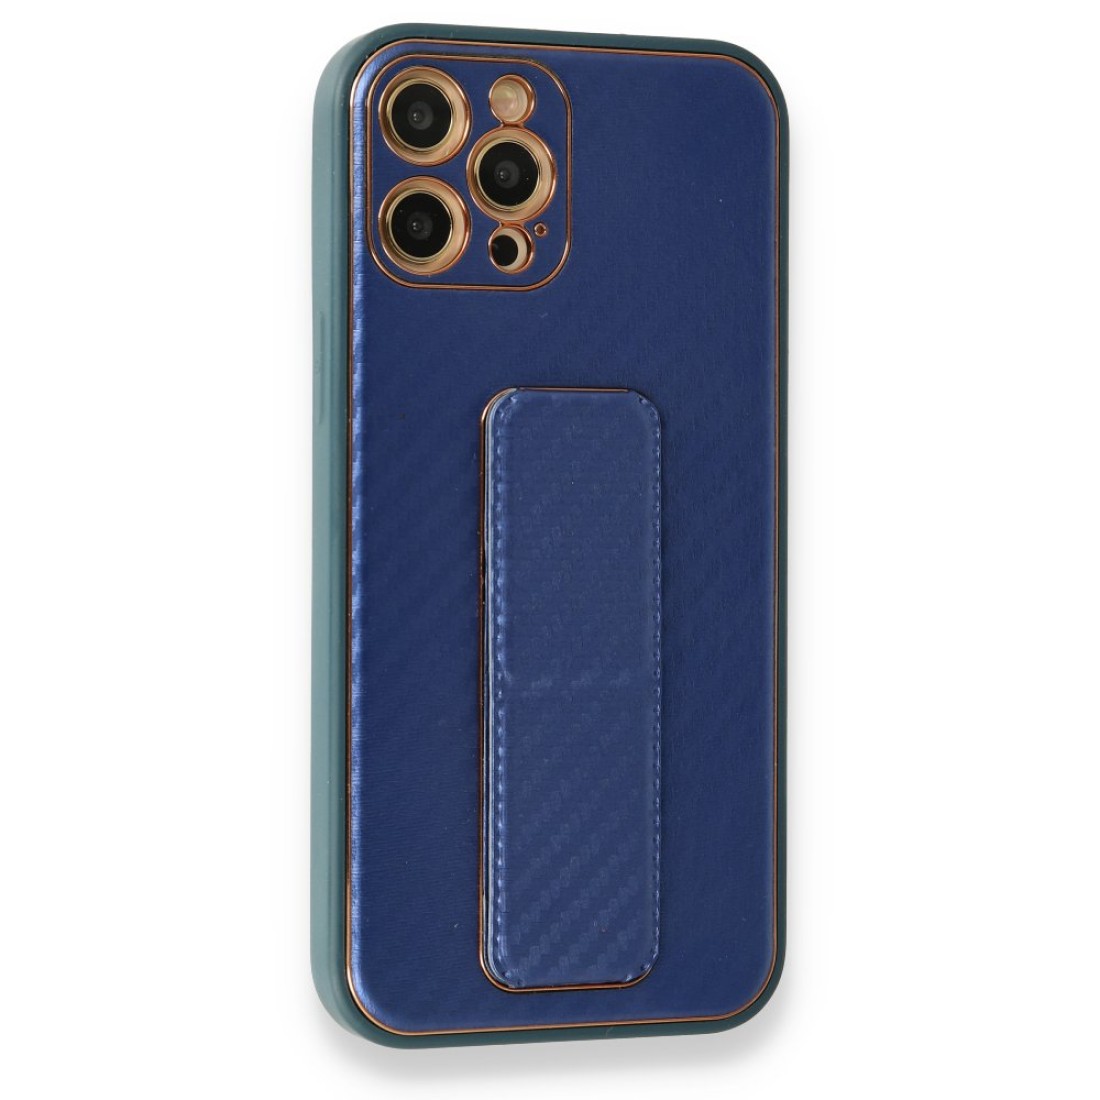 Apple iPhone 12 Pro Kılıf Coco Karbon Standlı Kapak  - Mavi